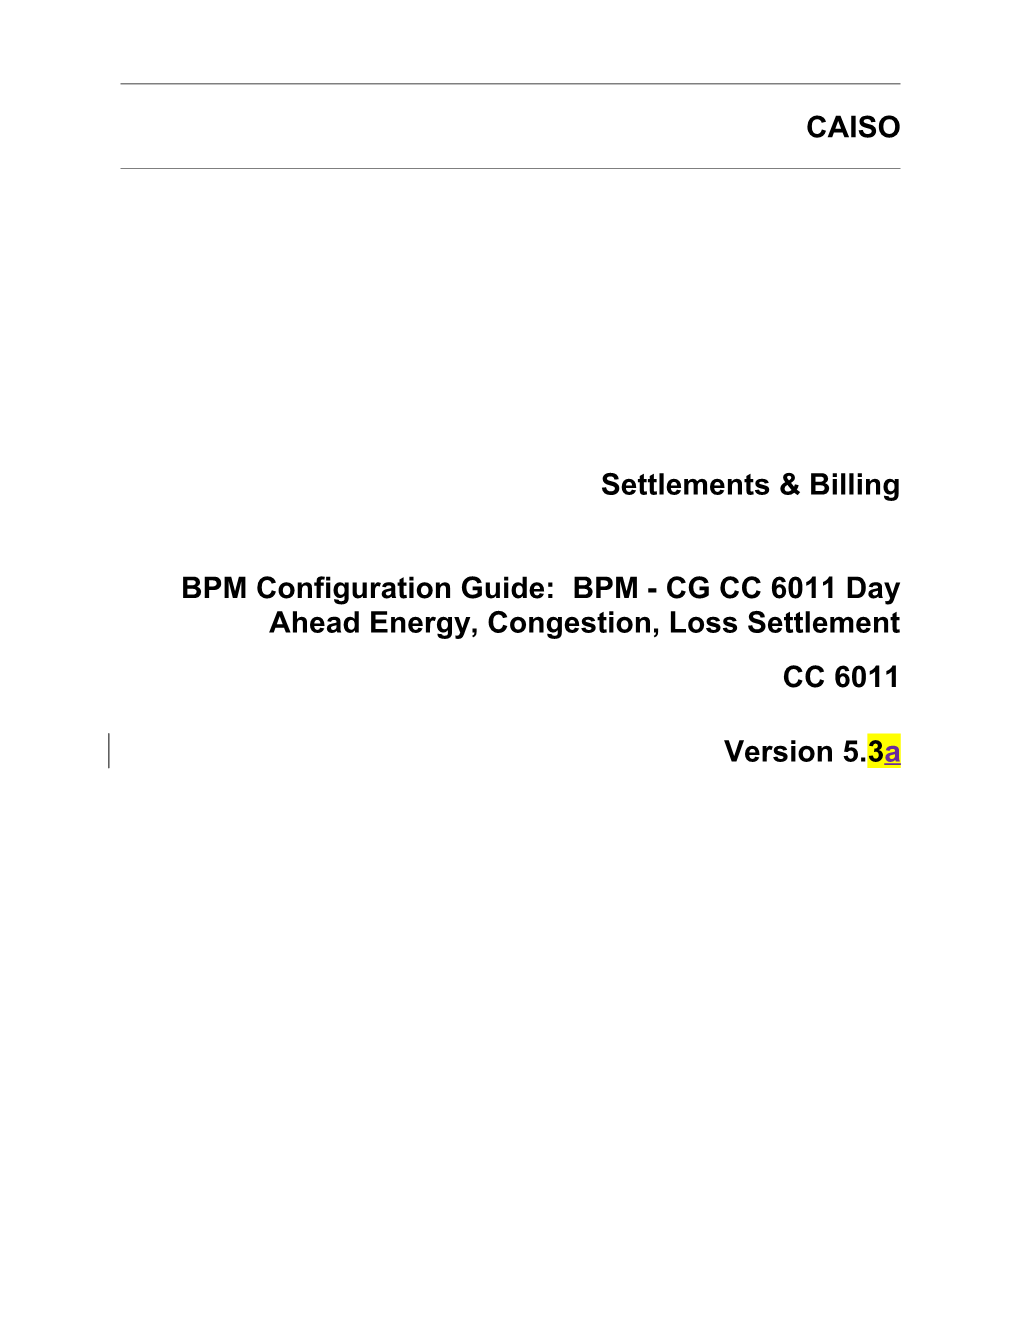 BPM - CG CC 6011 Day Ahead Energy, Congestion, Loss Settlement